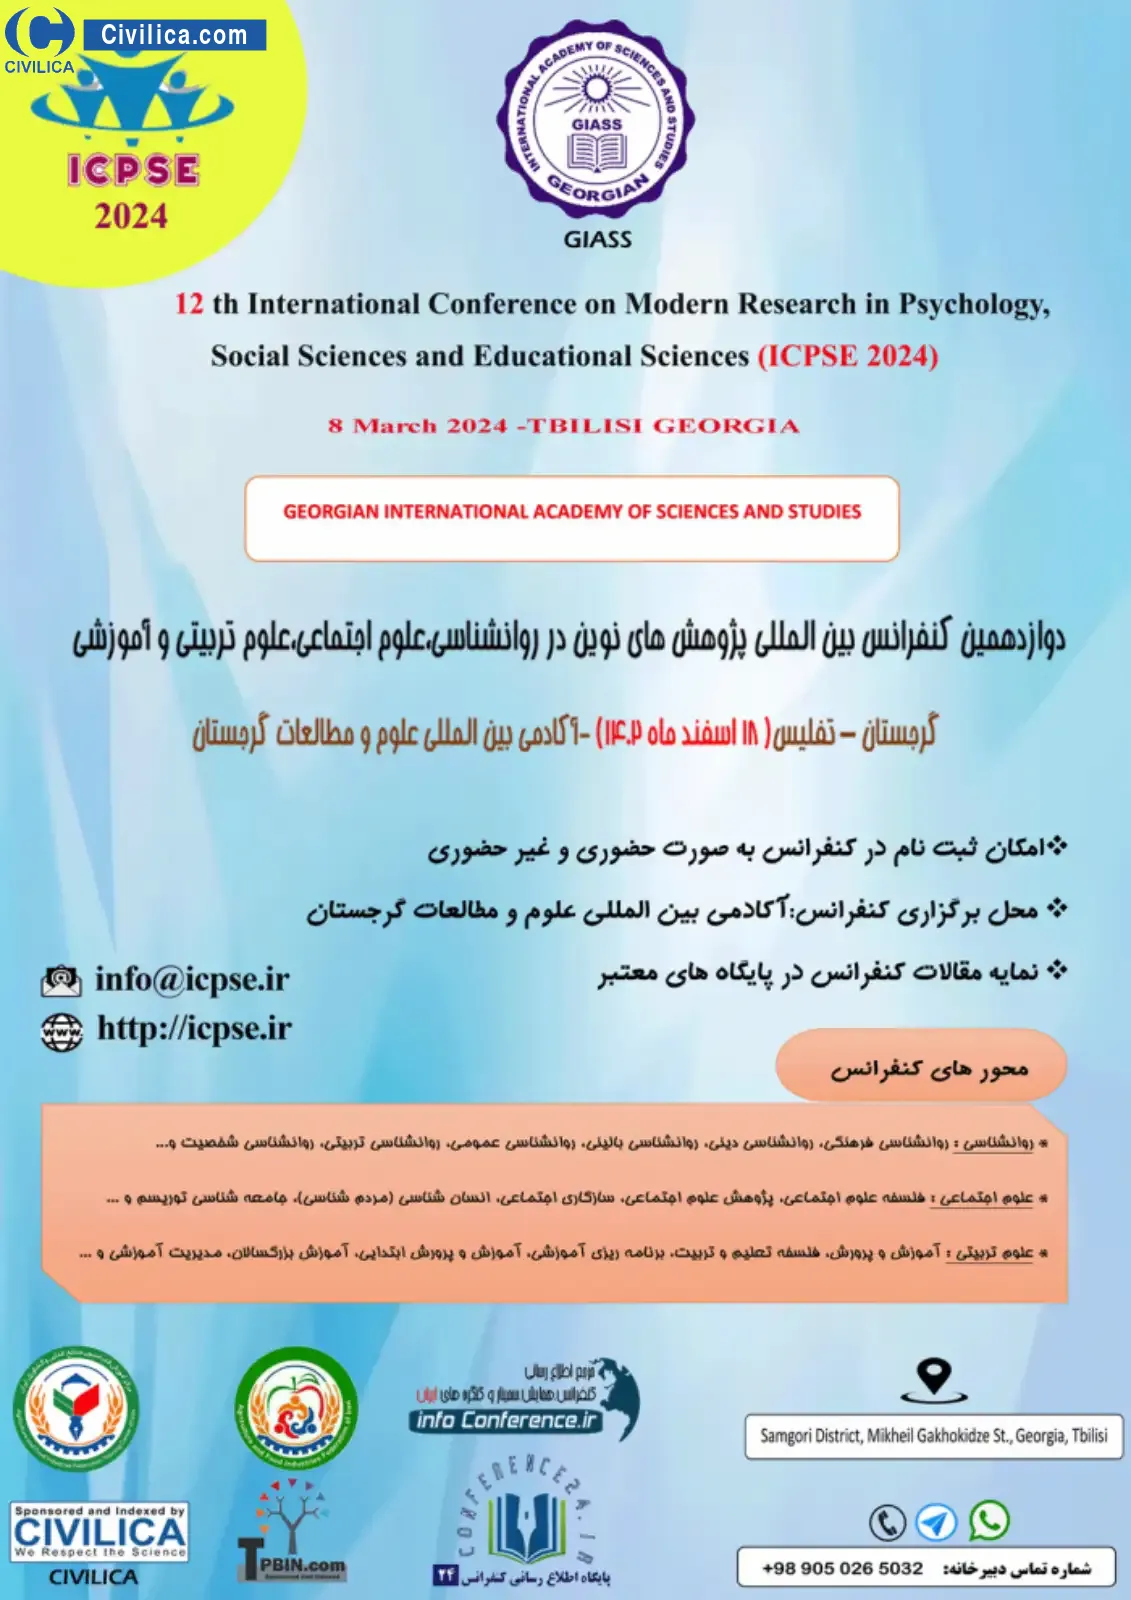 فراخوان مقاله دوازدهمین کنفرانس بین المللی پژوهش های نوین در روانشناسی، علوم اجتماعی، علوم تربیتی و آموزشی